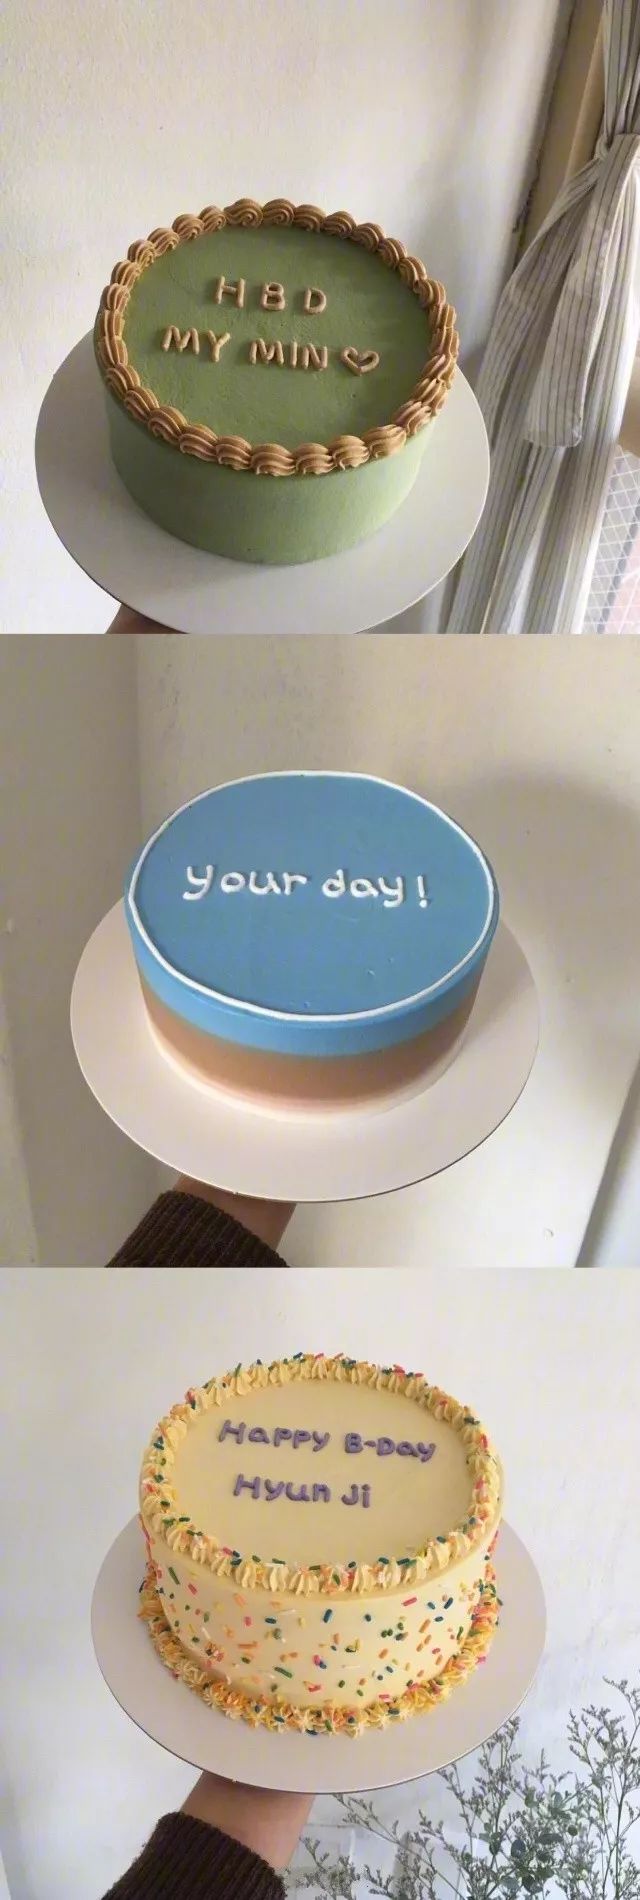 晒晒美图简约而不简单的生日蛋糕代表对你浓浓的爱